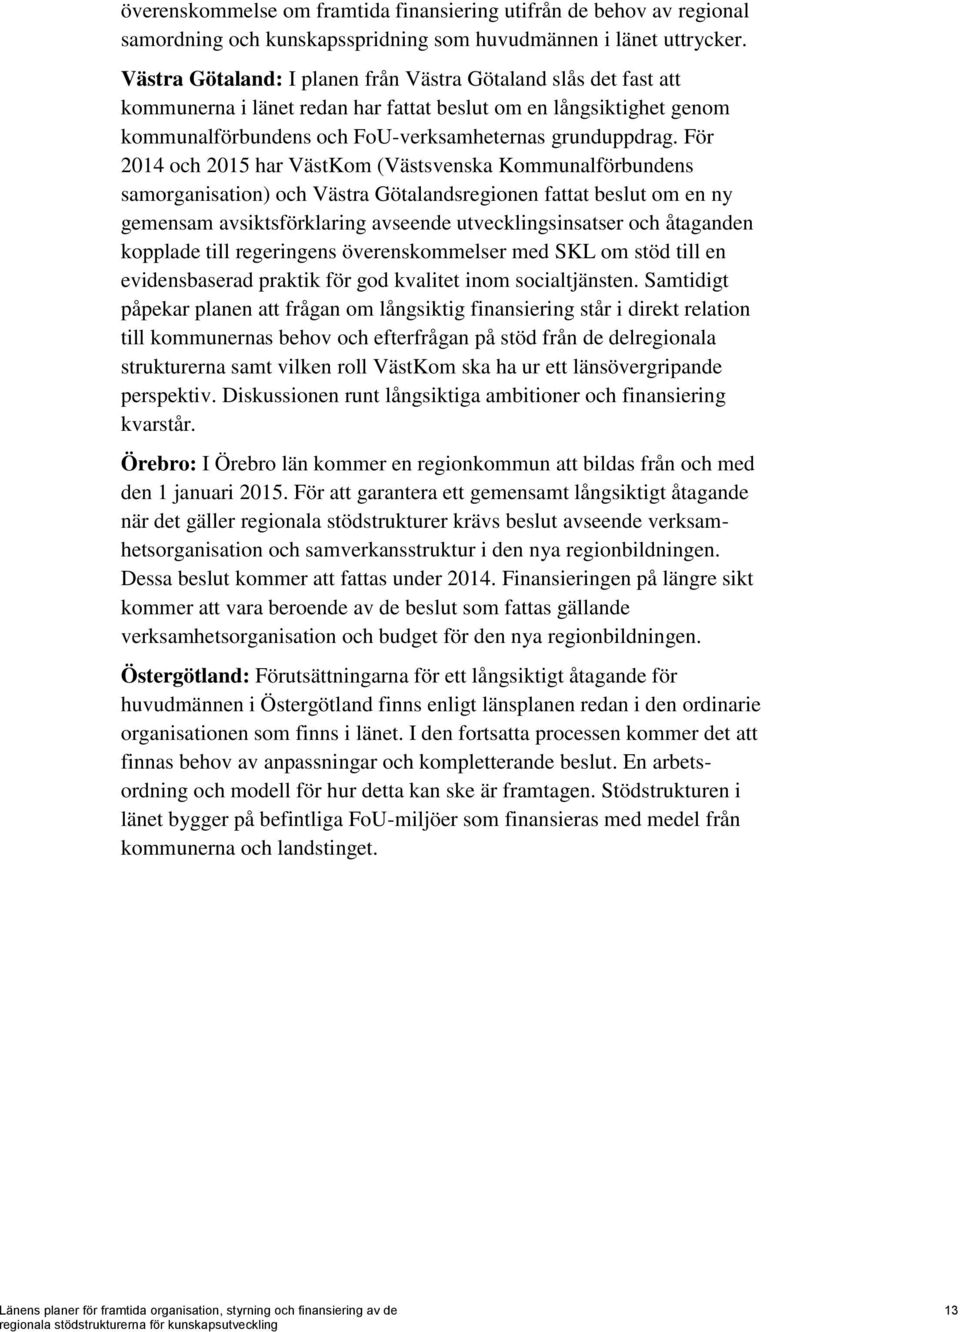 För 2014 och 2015 har VästKom (Västsvenska Kommunalförbundens samorganisation) och Västra Götalandsregionen fattat beslut om en ny gemensam avsiktsförklaring avseende utvecklingsinsatser och